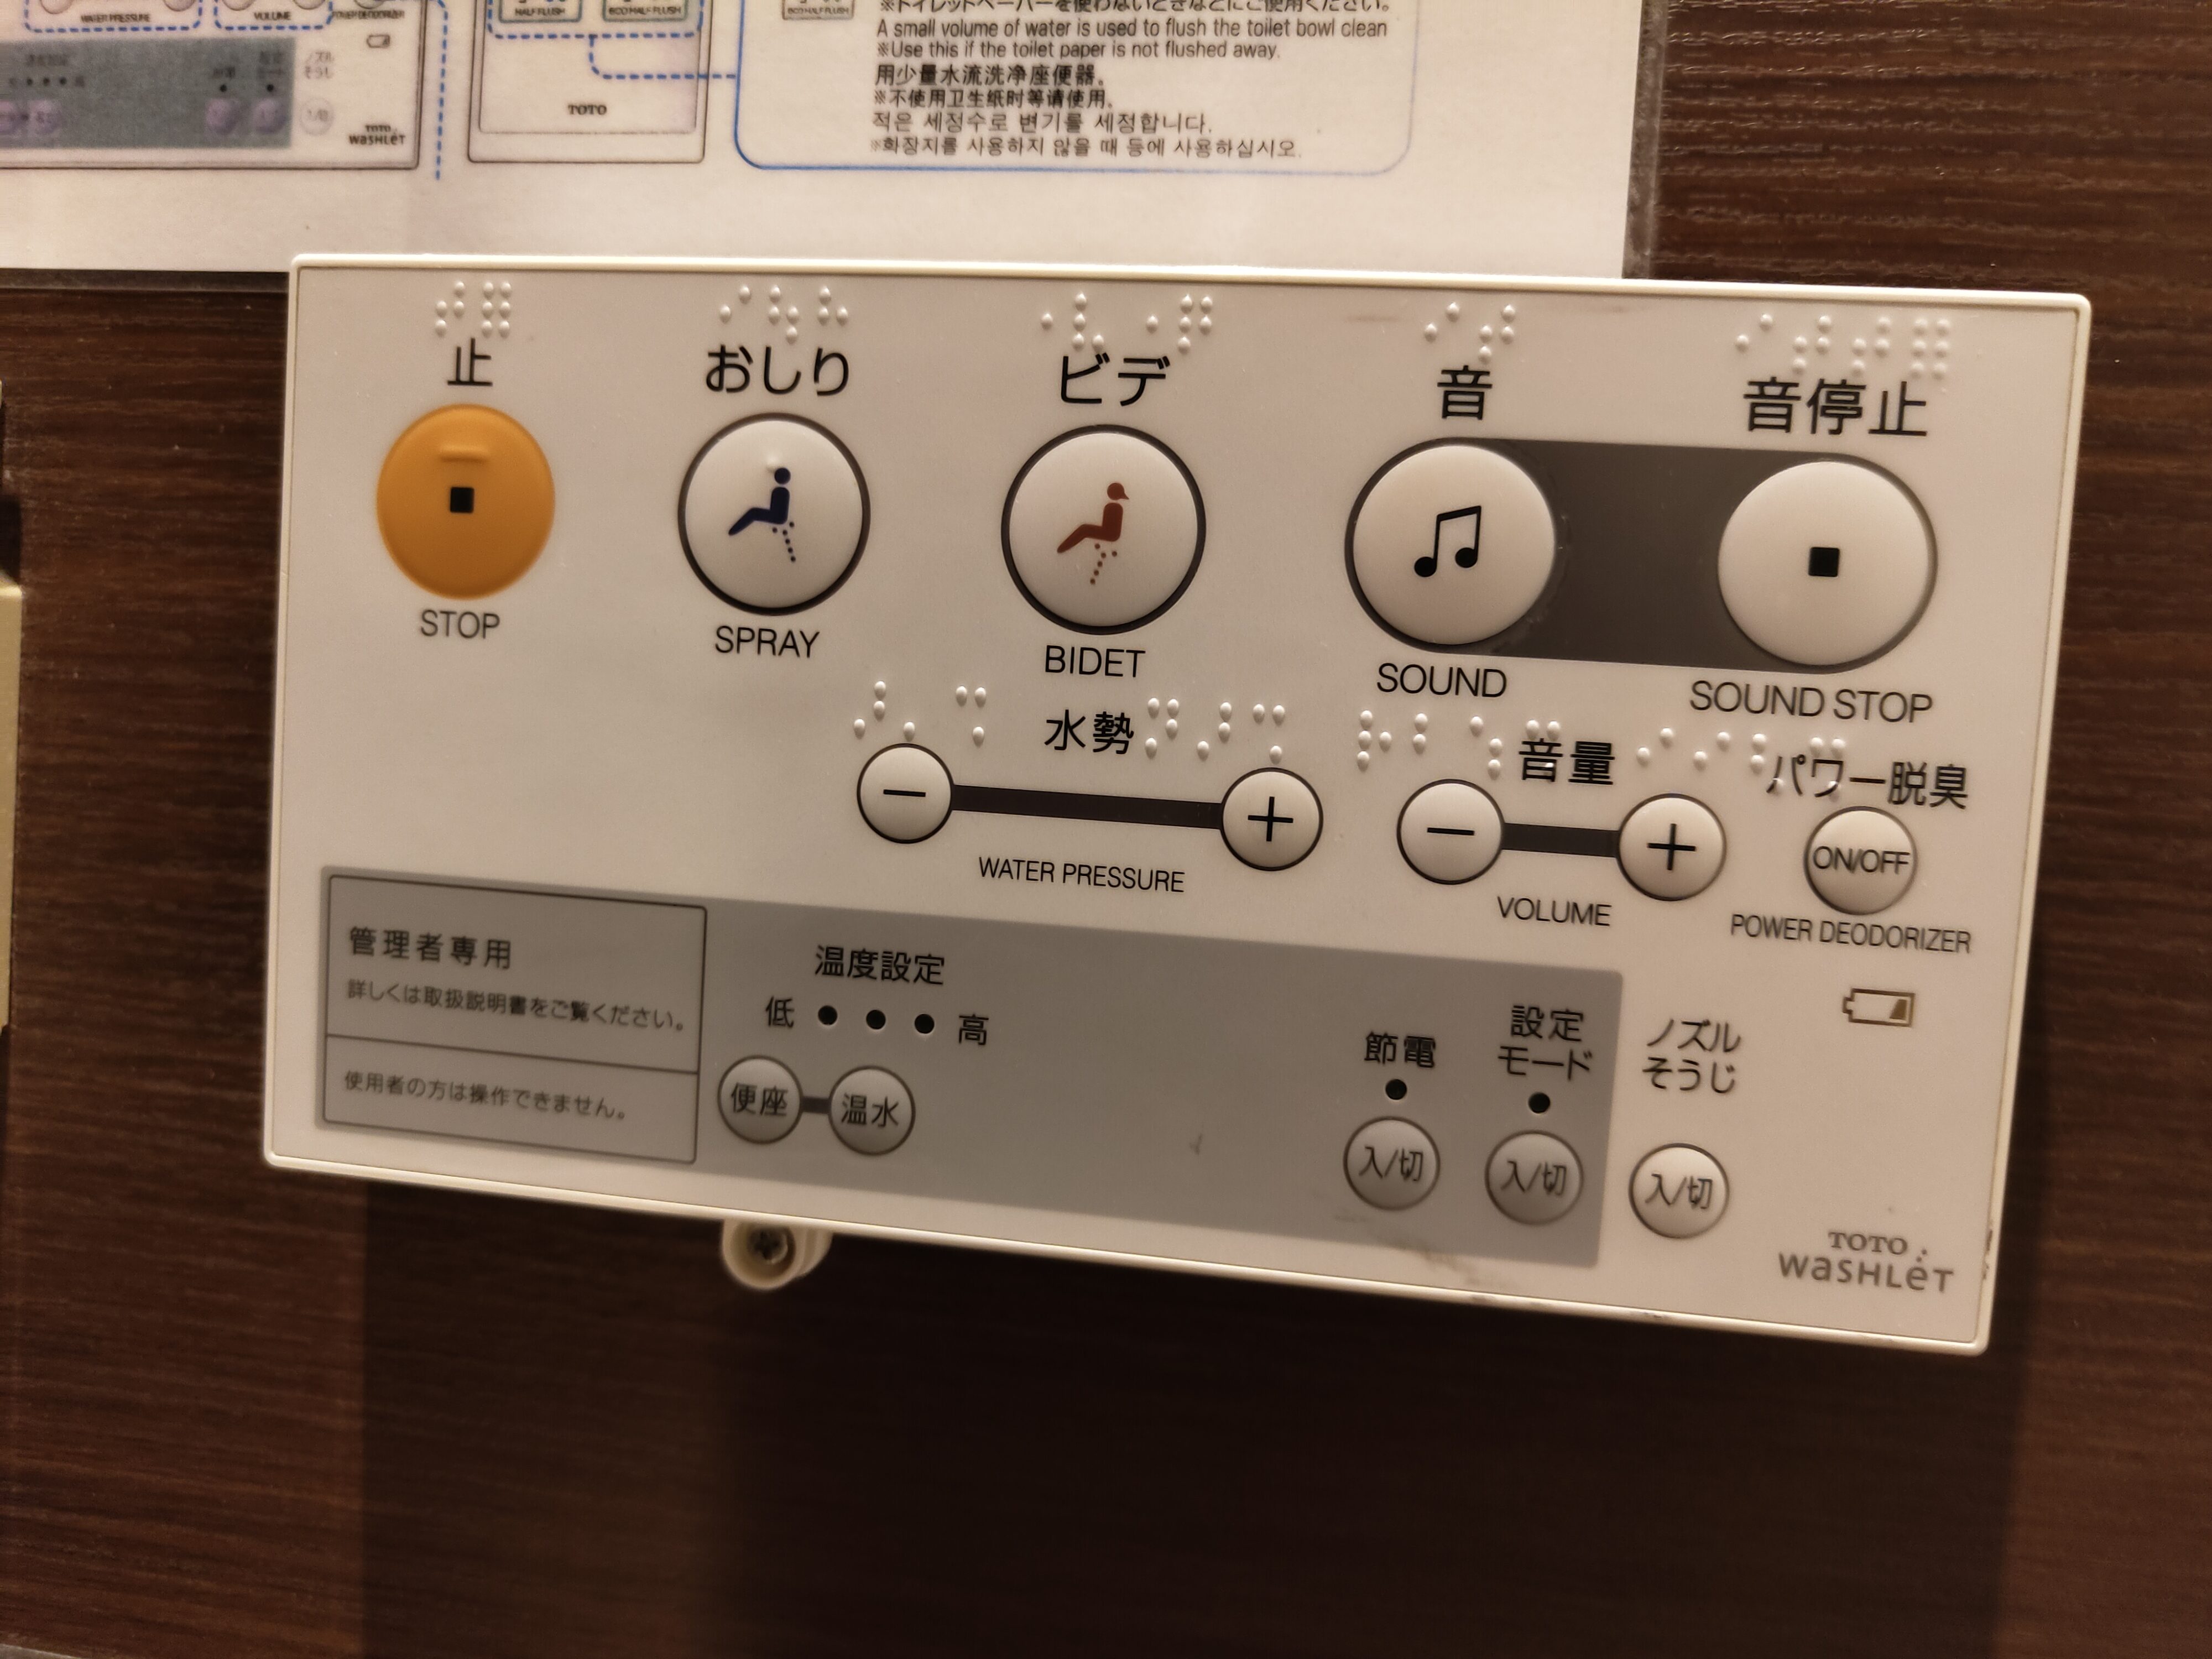 Bedienfeld für eine japanische Toilette: Zu sehen sind Knöpfe für Hintergrundgeräusche, verschiedene Bidet-Funktionen und Skalen, mit denen sich die Stärke des Wasserstrahls oder die Lautstärke der Geräusche regulieren lässt.